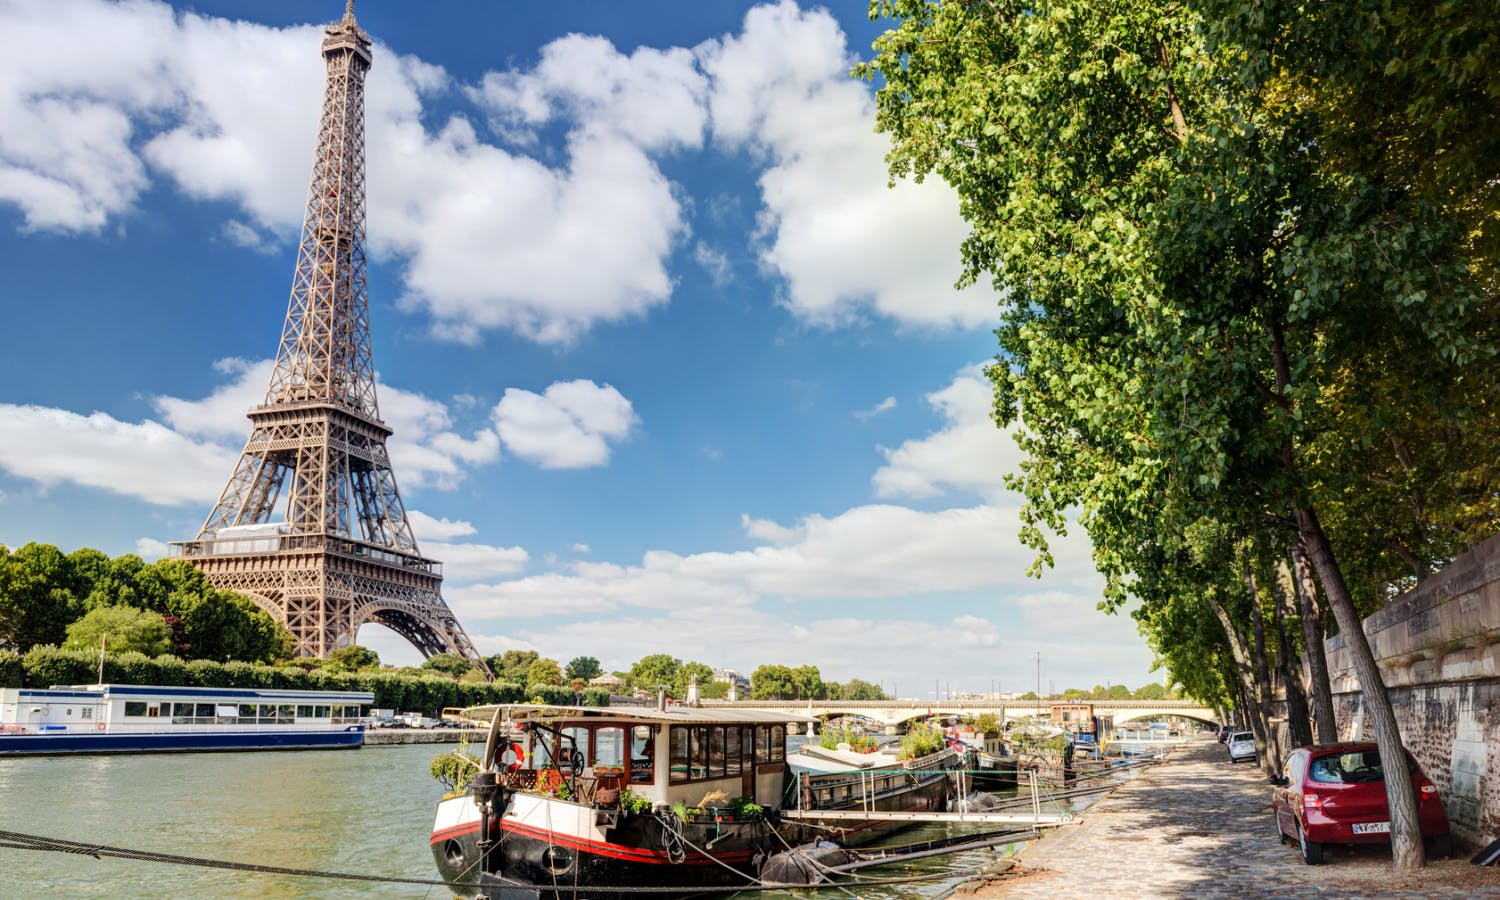 Het beste van Parijs stadstour inclusief lunch in de Eiffeltoren en rondvaart op de Seine